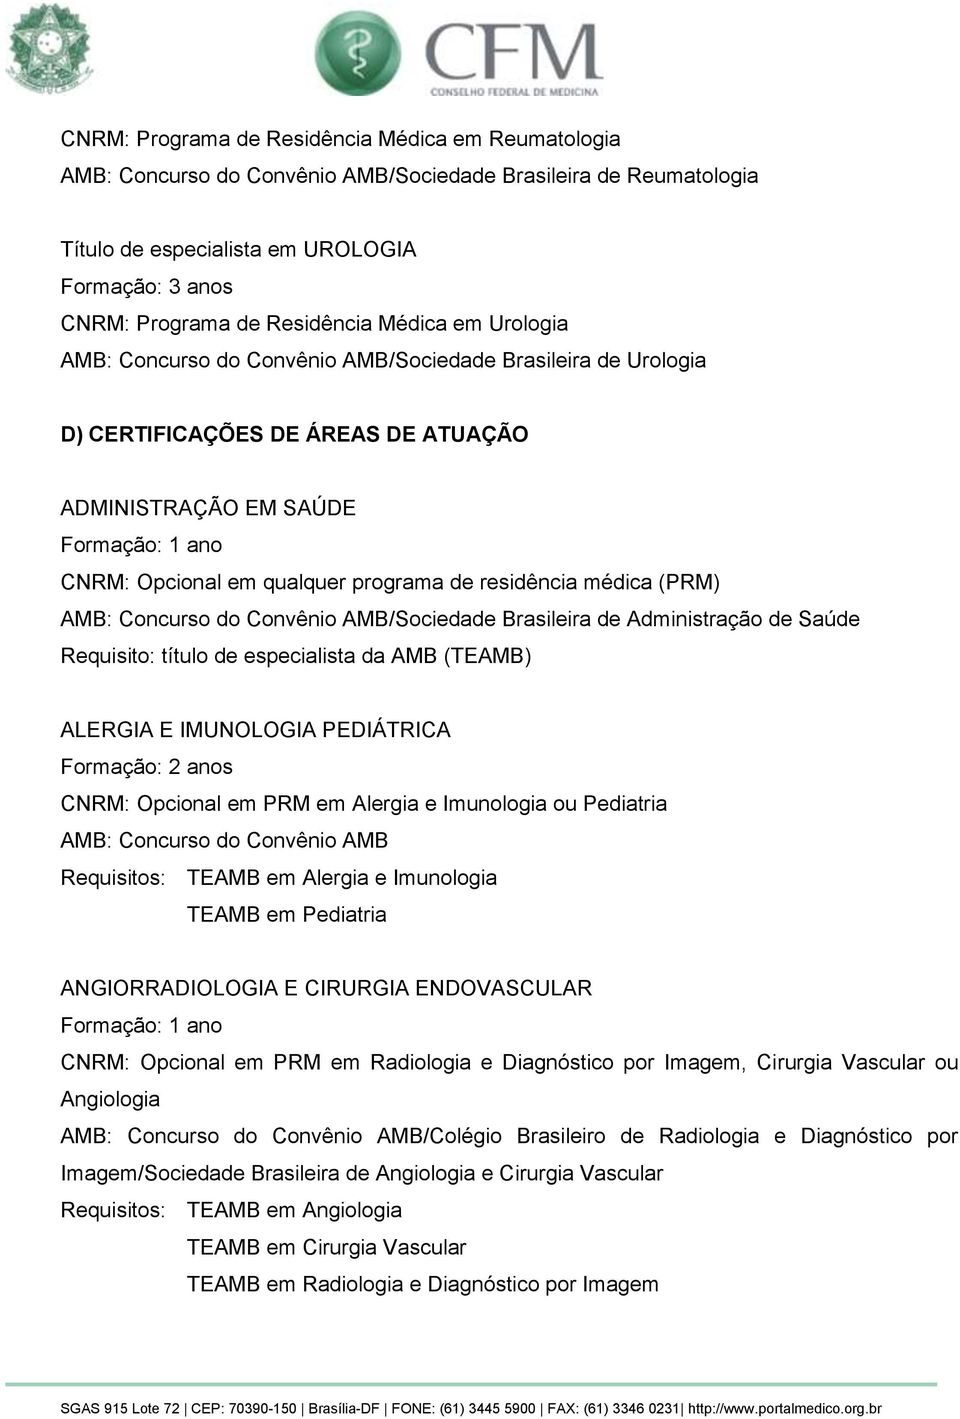 Concurso do Convênio AMB/Sociedade Brasileira de Administração de Saúde Requisito: título de especialista da AMB (TEAMB) ALERGIA E IMUNOLOGIA PEDIÁTRICA CNRM: Opcional em PRM em Alergia e Imunologia